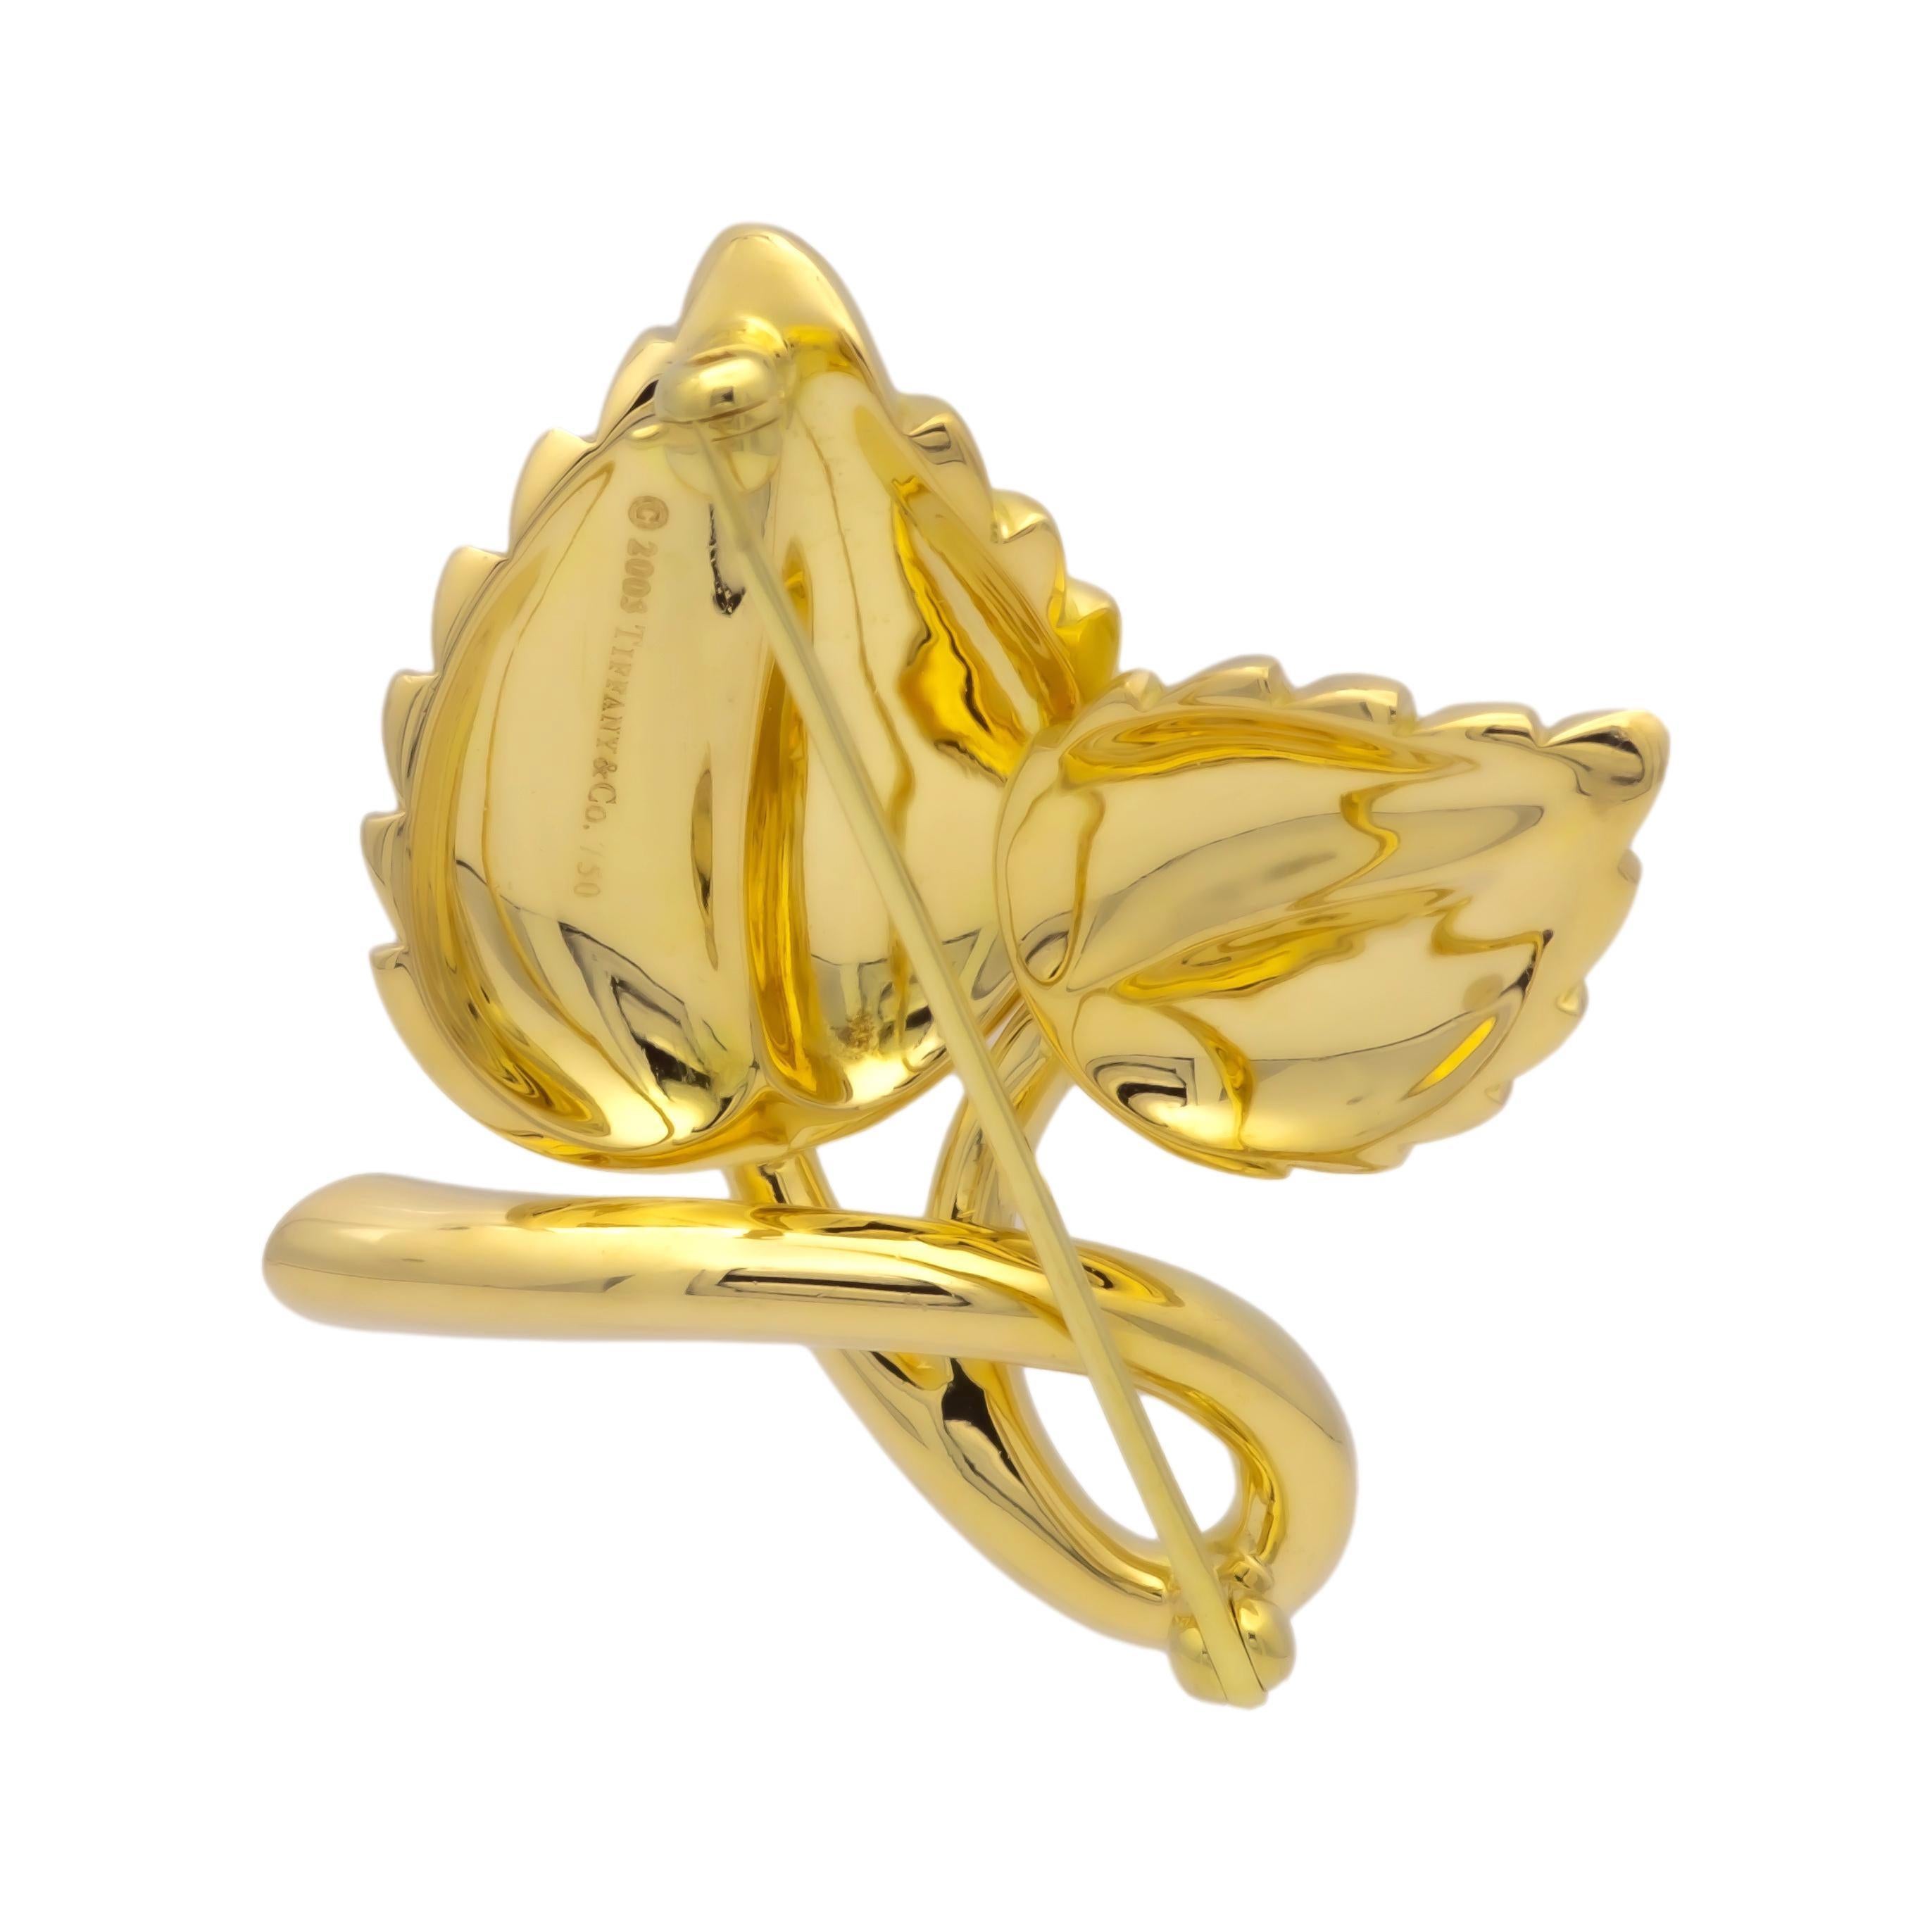 Épingle Vintage Tiffany & Co. à motif de double feuille finement travaillée en or jaune 18 carats présentant un diamant rond de taille brillant pesant 0.08 carats environ avec un bel éclat. Cette broche présente une finition satinée sur un or